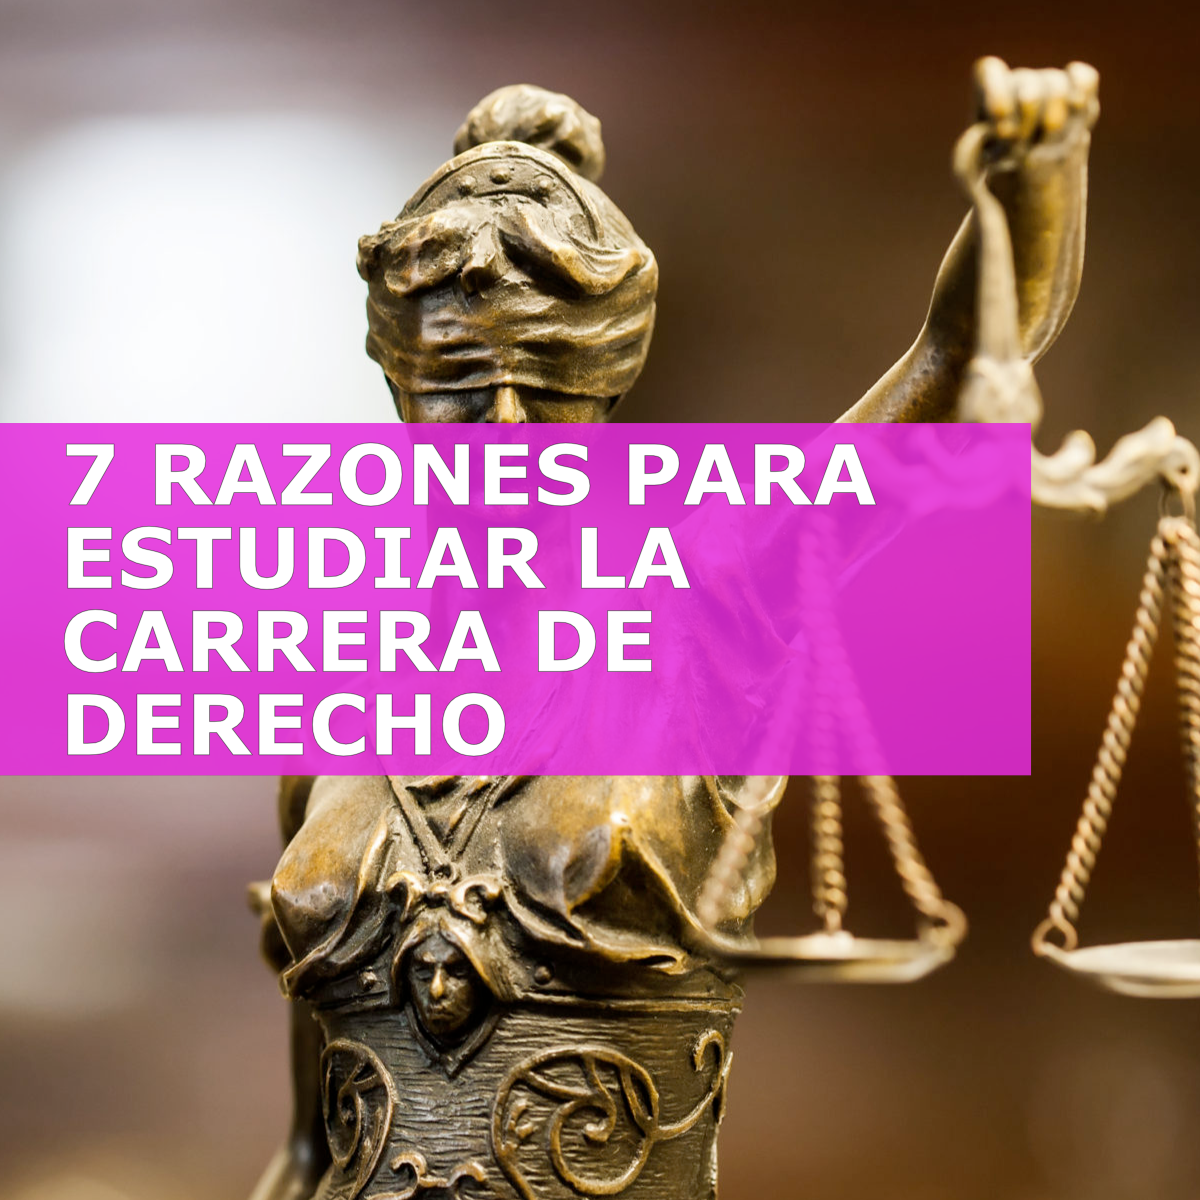 7 RAZONES PARA ESTUDIAR LA CARRERA DE DERECHO. ¡LA NÚMERO 3 ES LA MEJOR! –  Tareas Juridicas